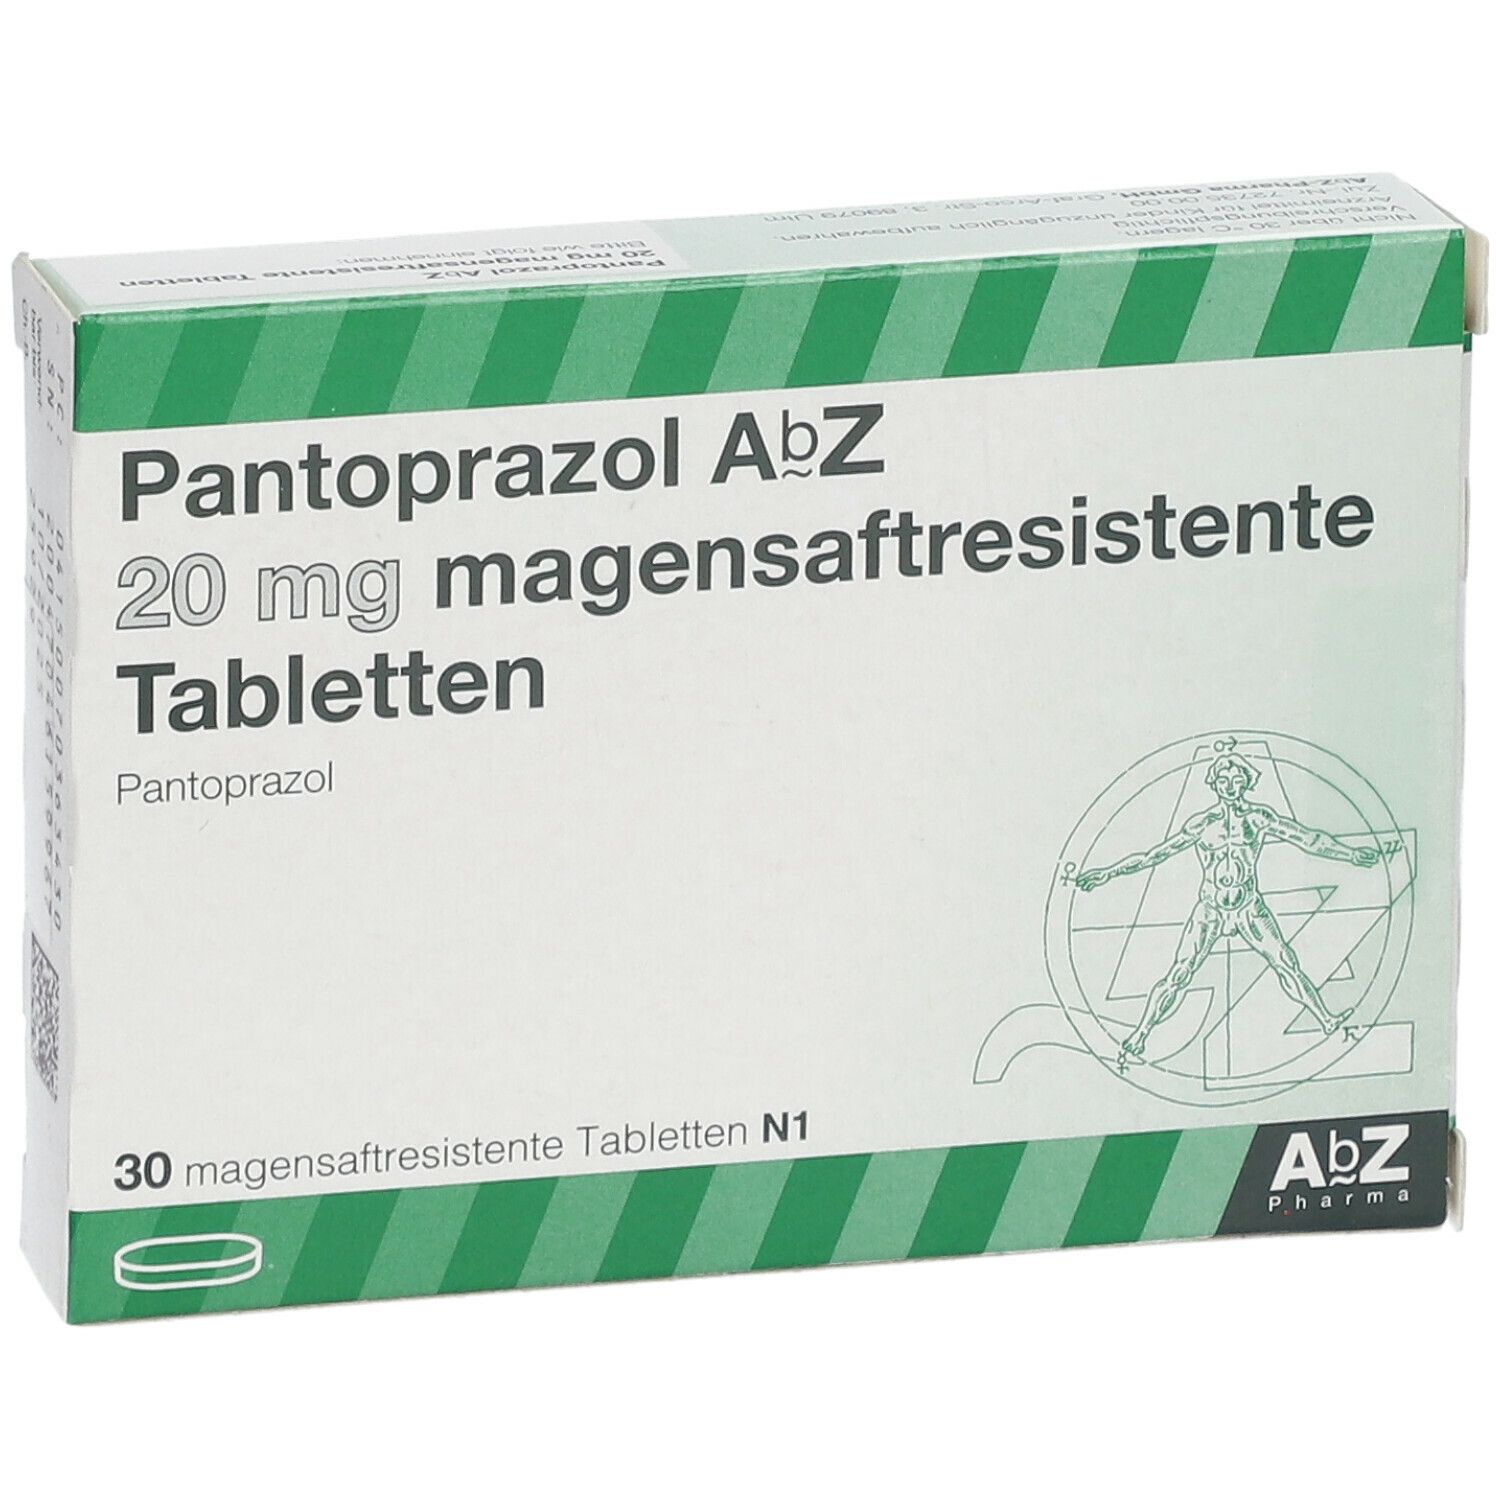 Pantoprazol AbZ 20Mg